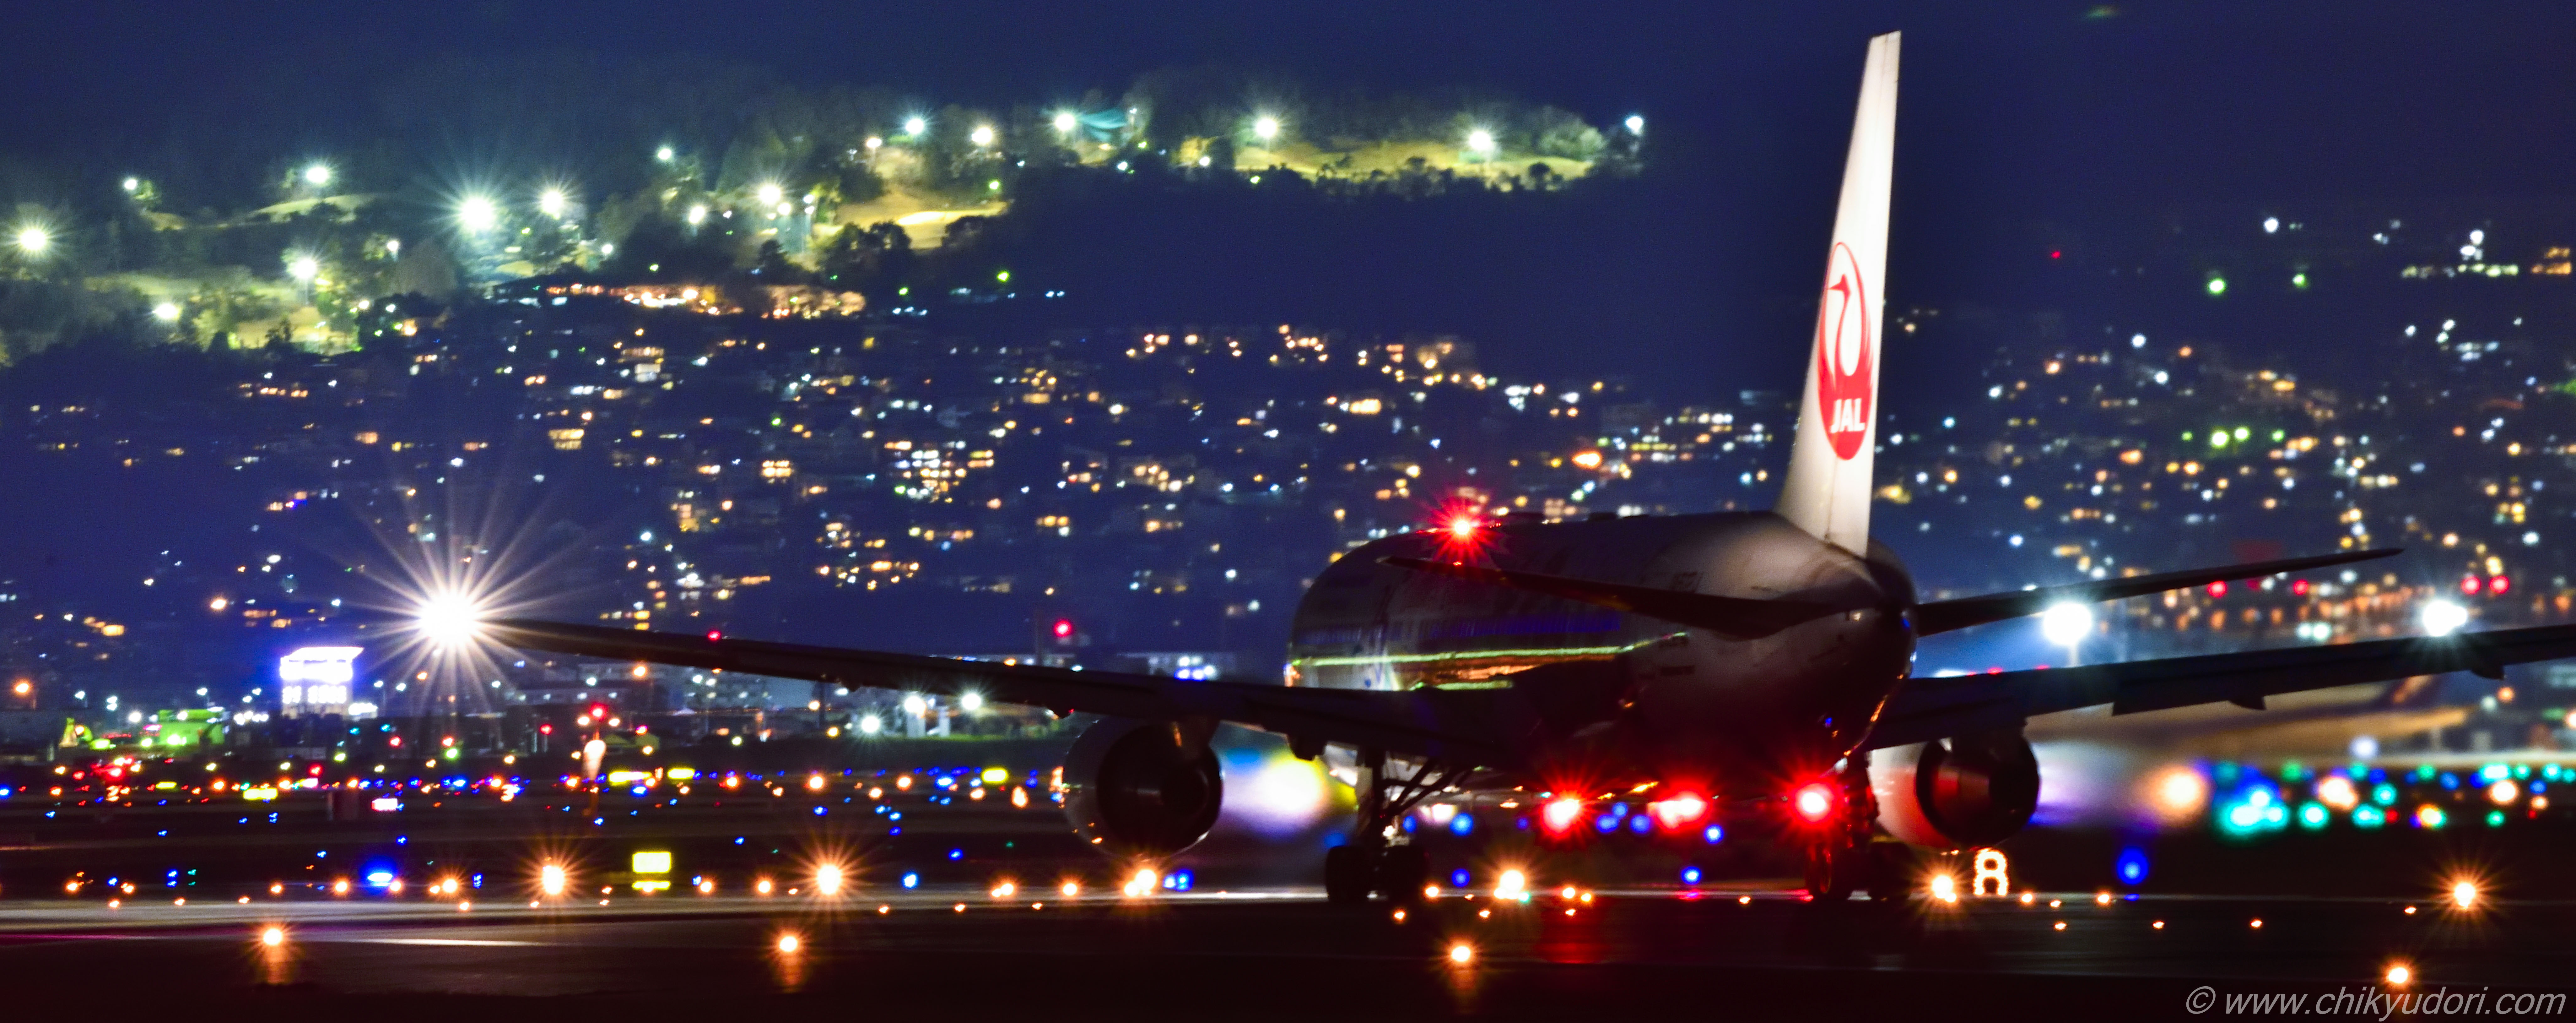 伊丹空港 大阪国際空港 の千里川の土手と夜景撮影 地球の撮り方